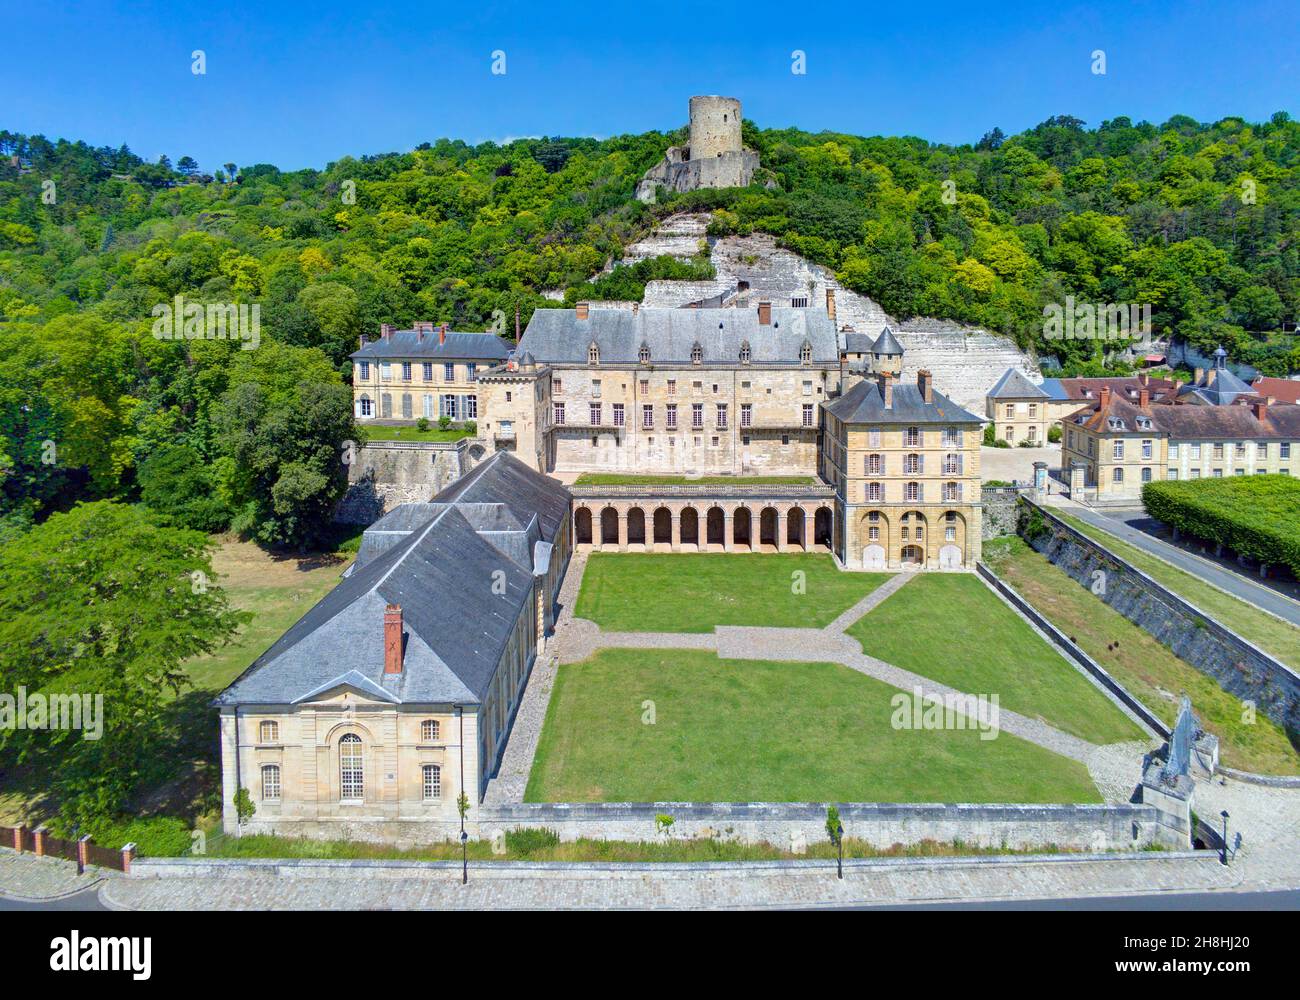 France, Val-d'Oise, La Roche-Guyon labeled Les Plus Beaux Villages de France (The Most Beautiful Villages of France), the castle Stock Photo